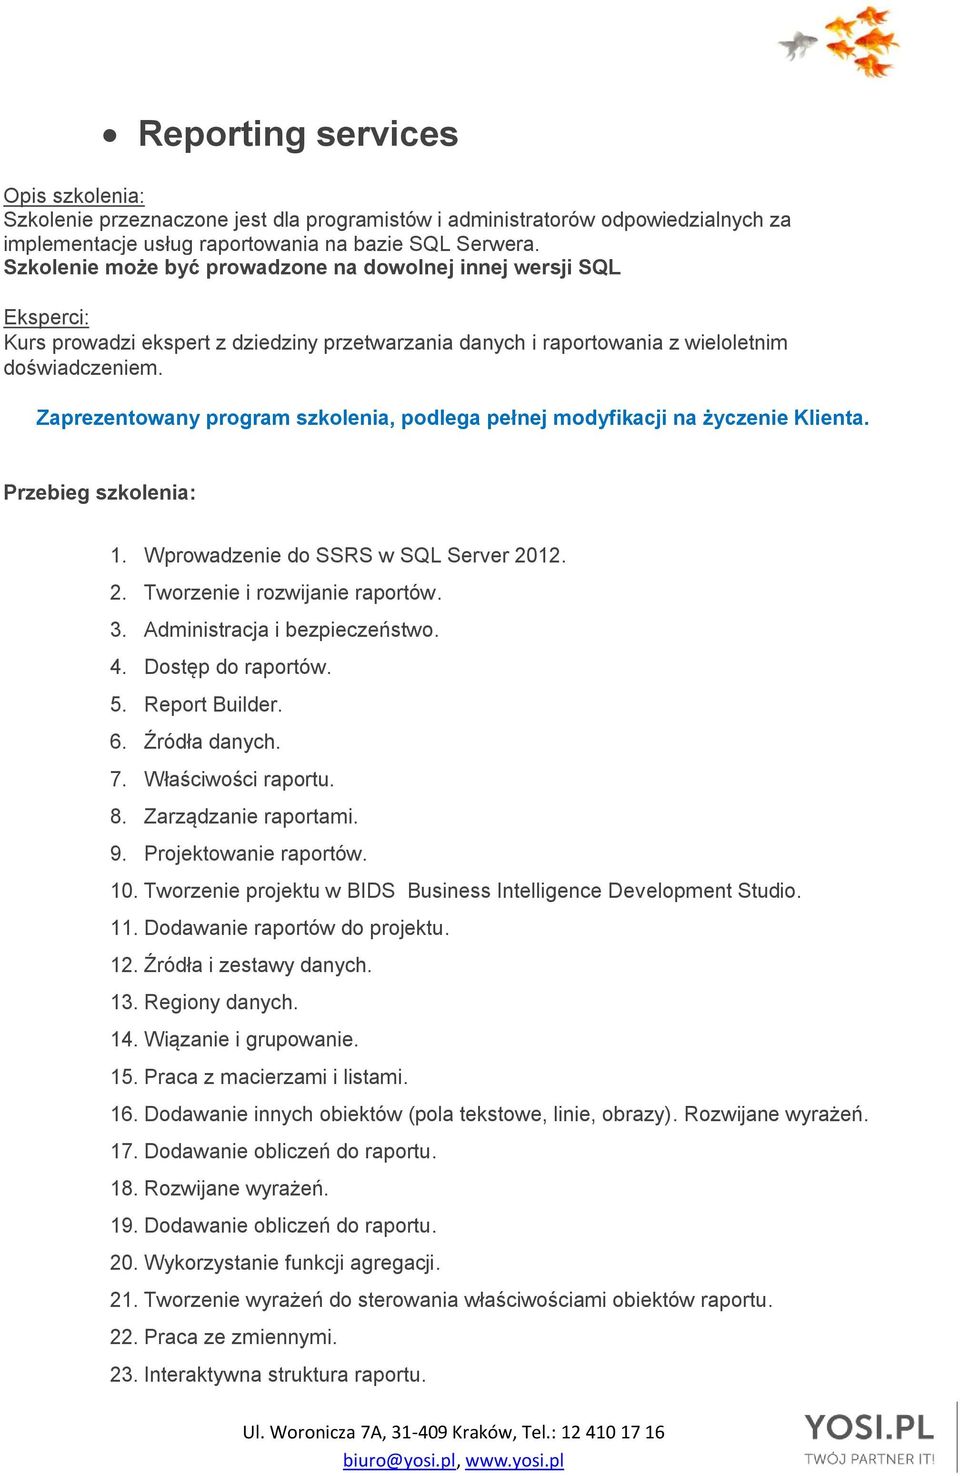 Zaprezentowany program szkolenia, podlega pełnej modyfikacji na życzenie Klienta. Przebieg szkolenia: 1. Wprowadzenie do SSRS w SQL Server 2012. 2. Tworzenie i rozwijanie raportów. 3.